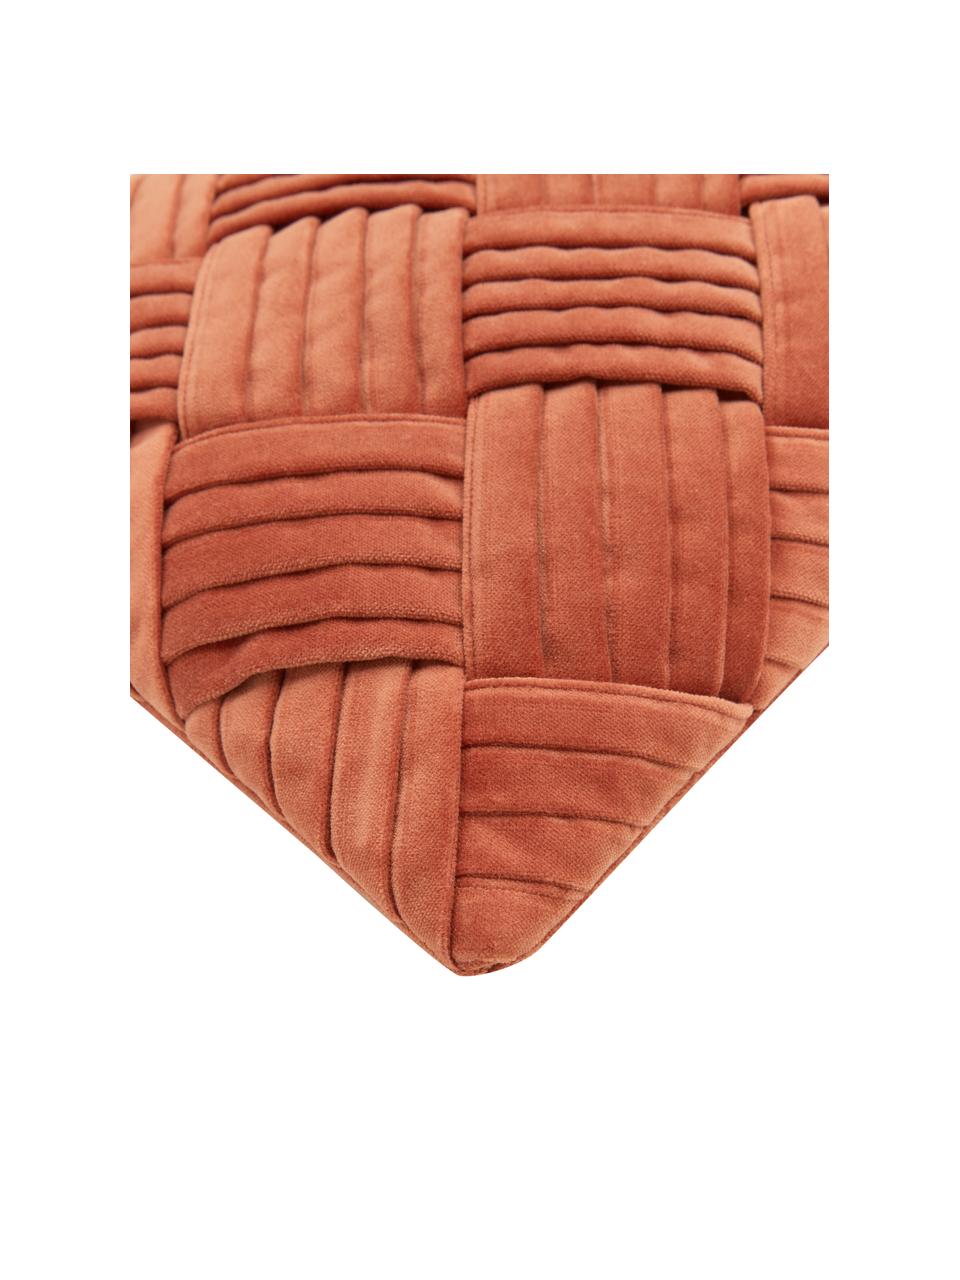 Federa arredo in velluto rosso ruggine con motivo strutturato Sina, Velluto (100% cotone), Rosso, Larg. 30 x Lung. 50 cm